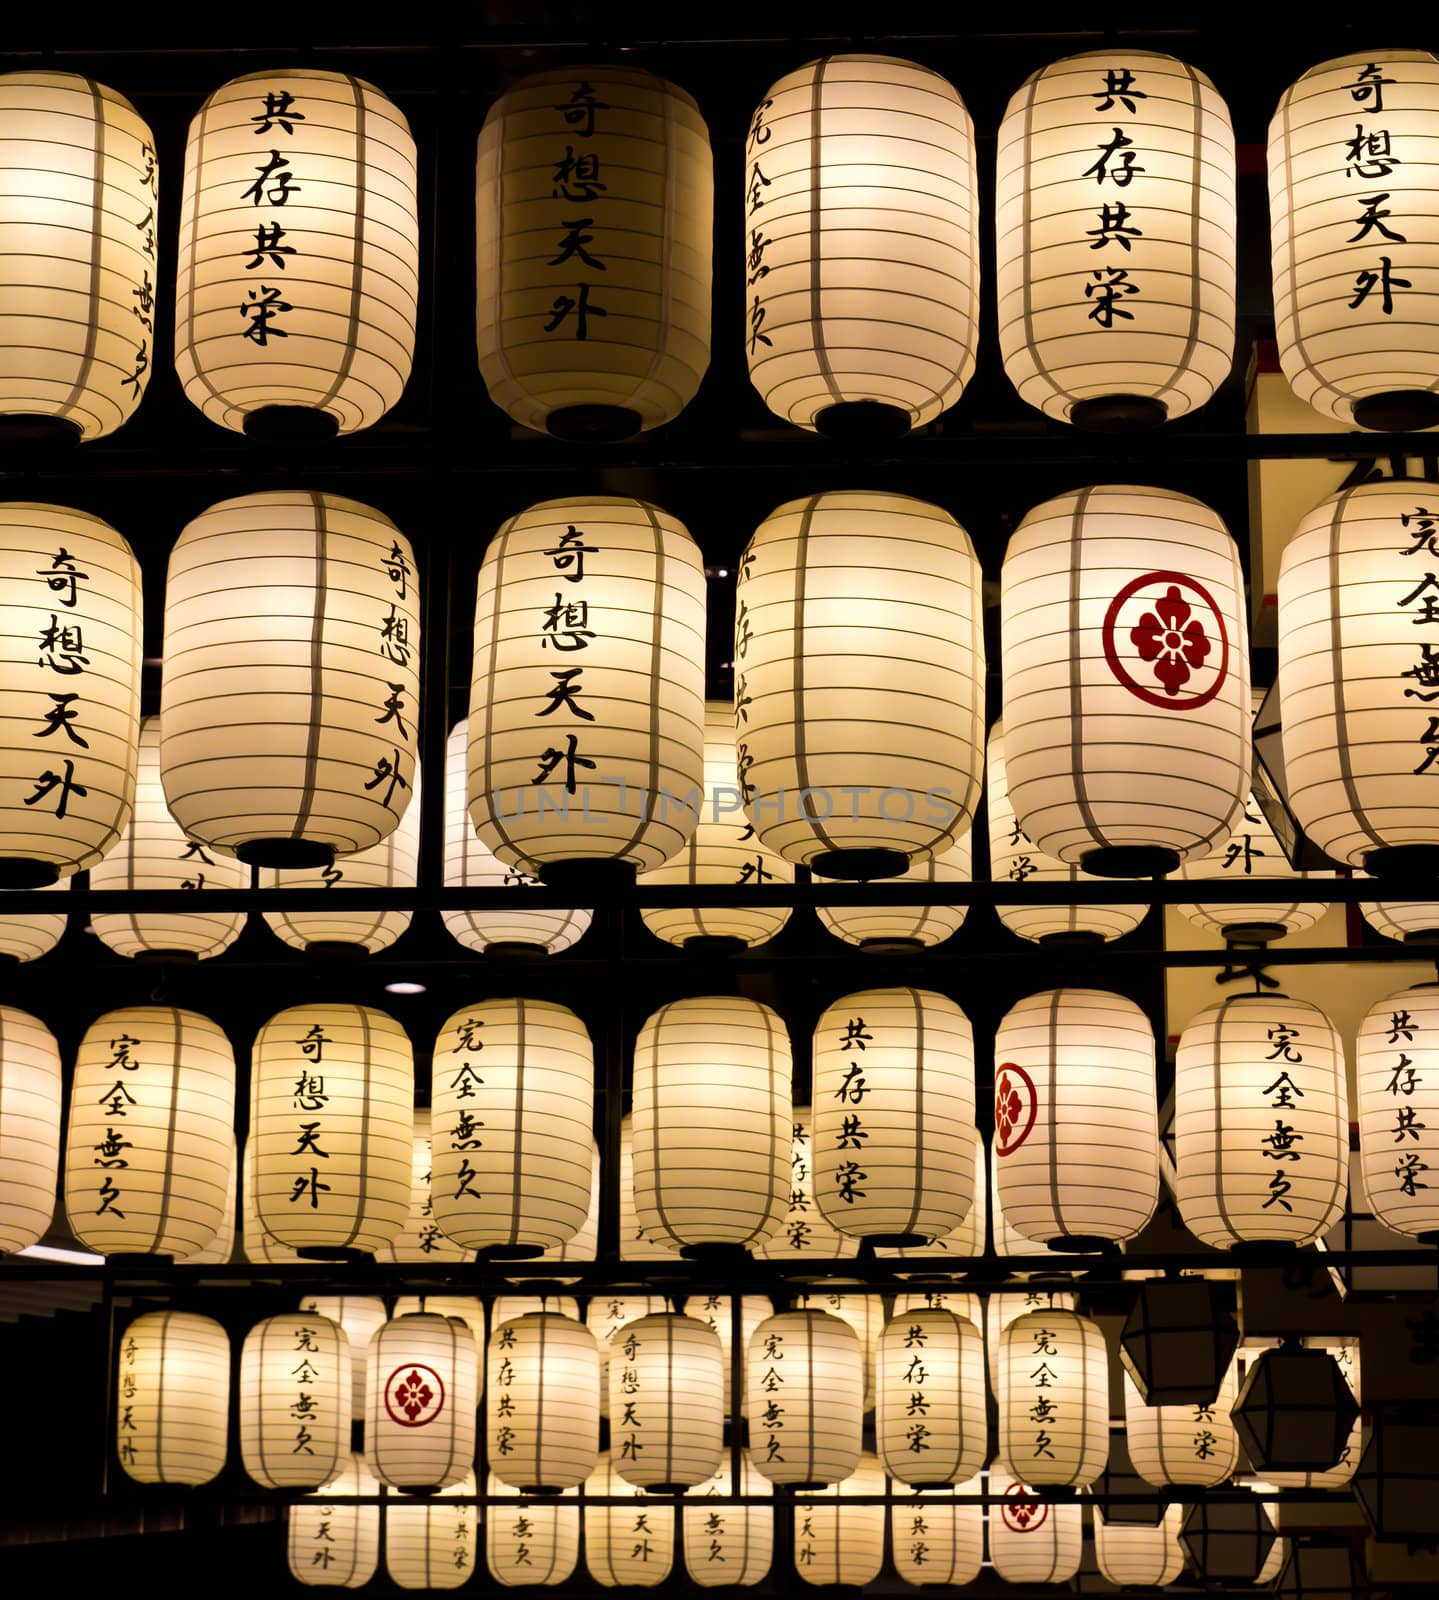 japanese style lanterns by tungphoto